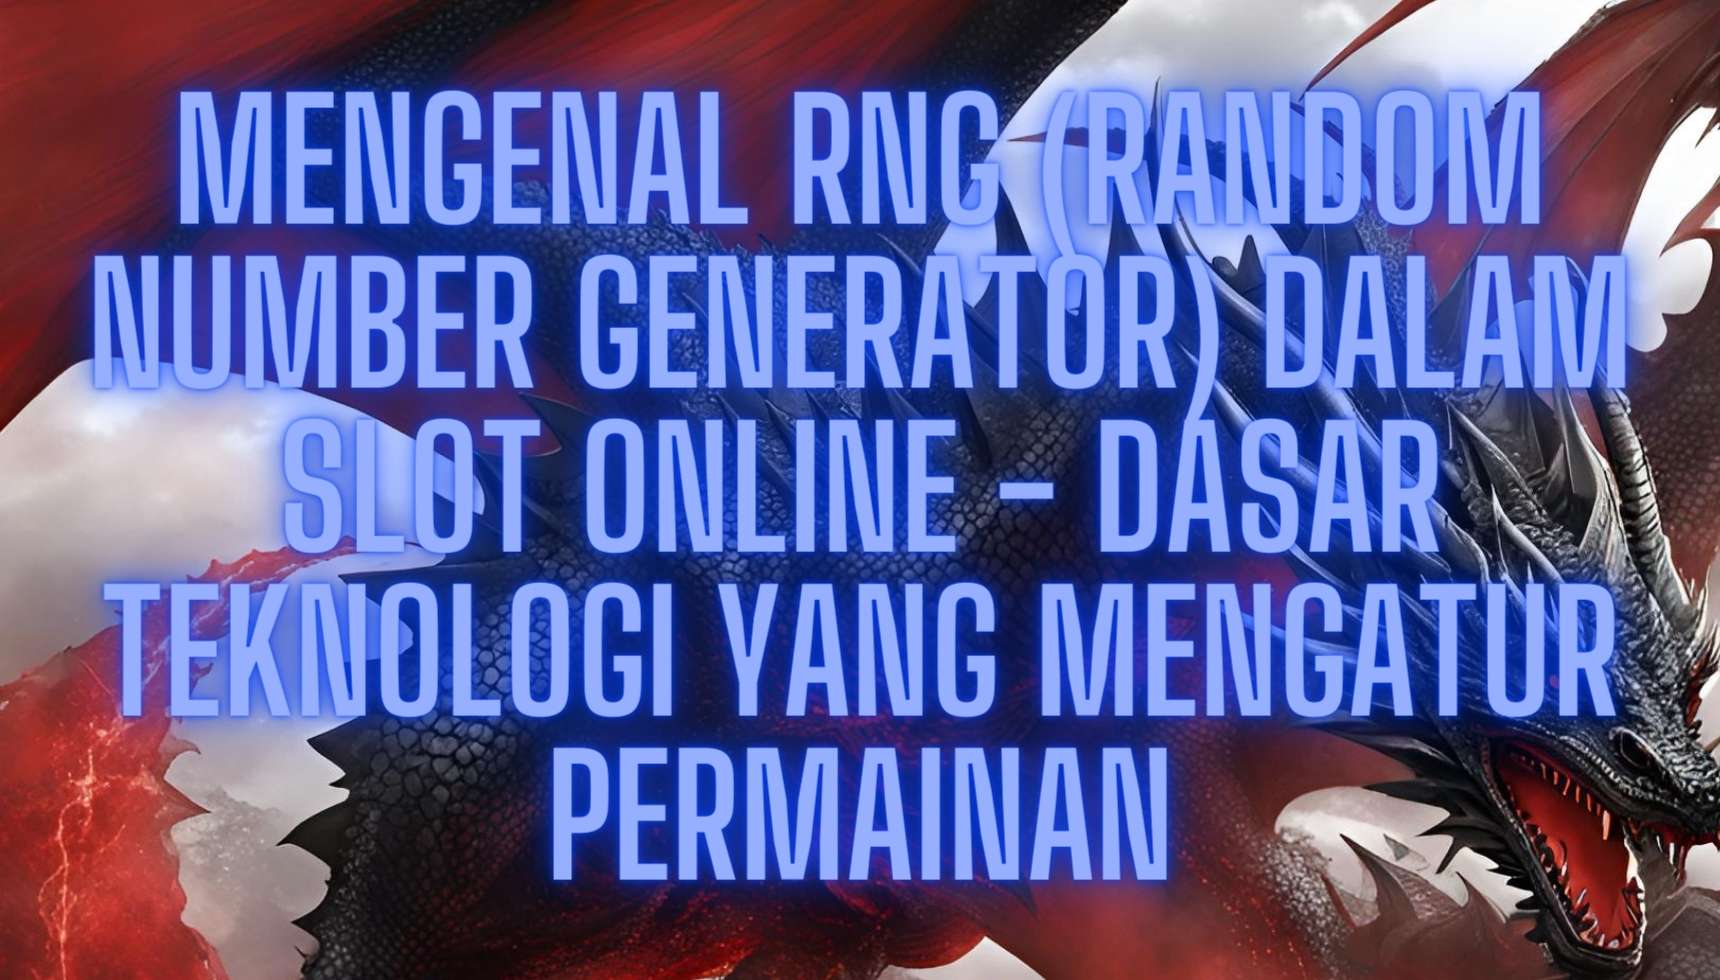 Mengenal RNG (Random Number Generator) dalam Slot Online